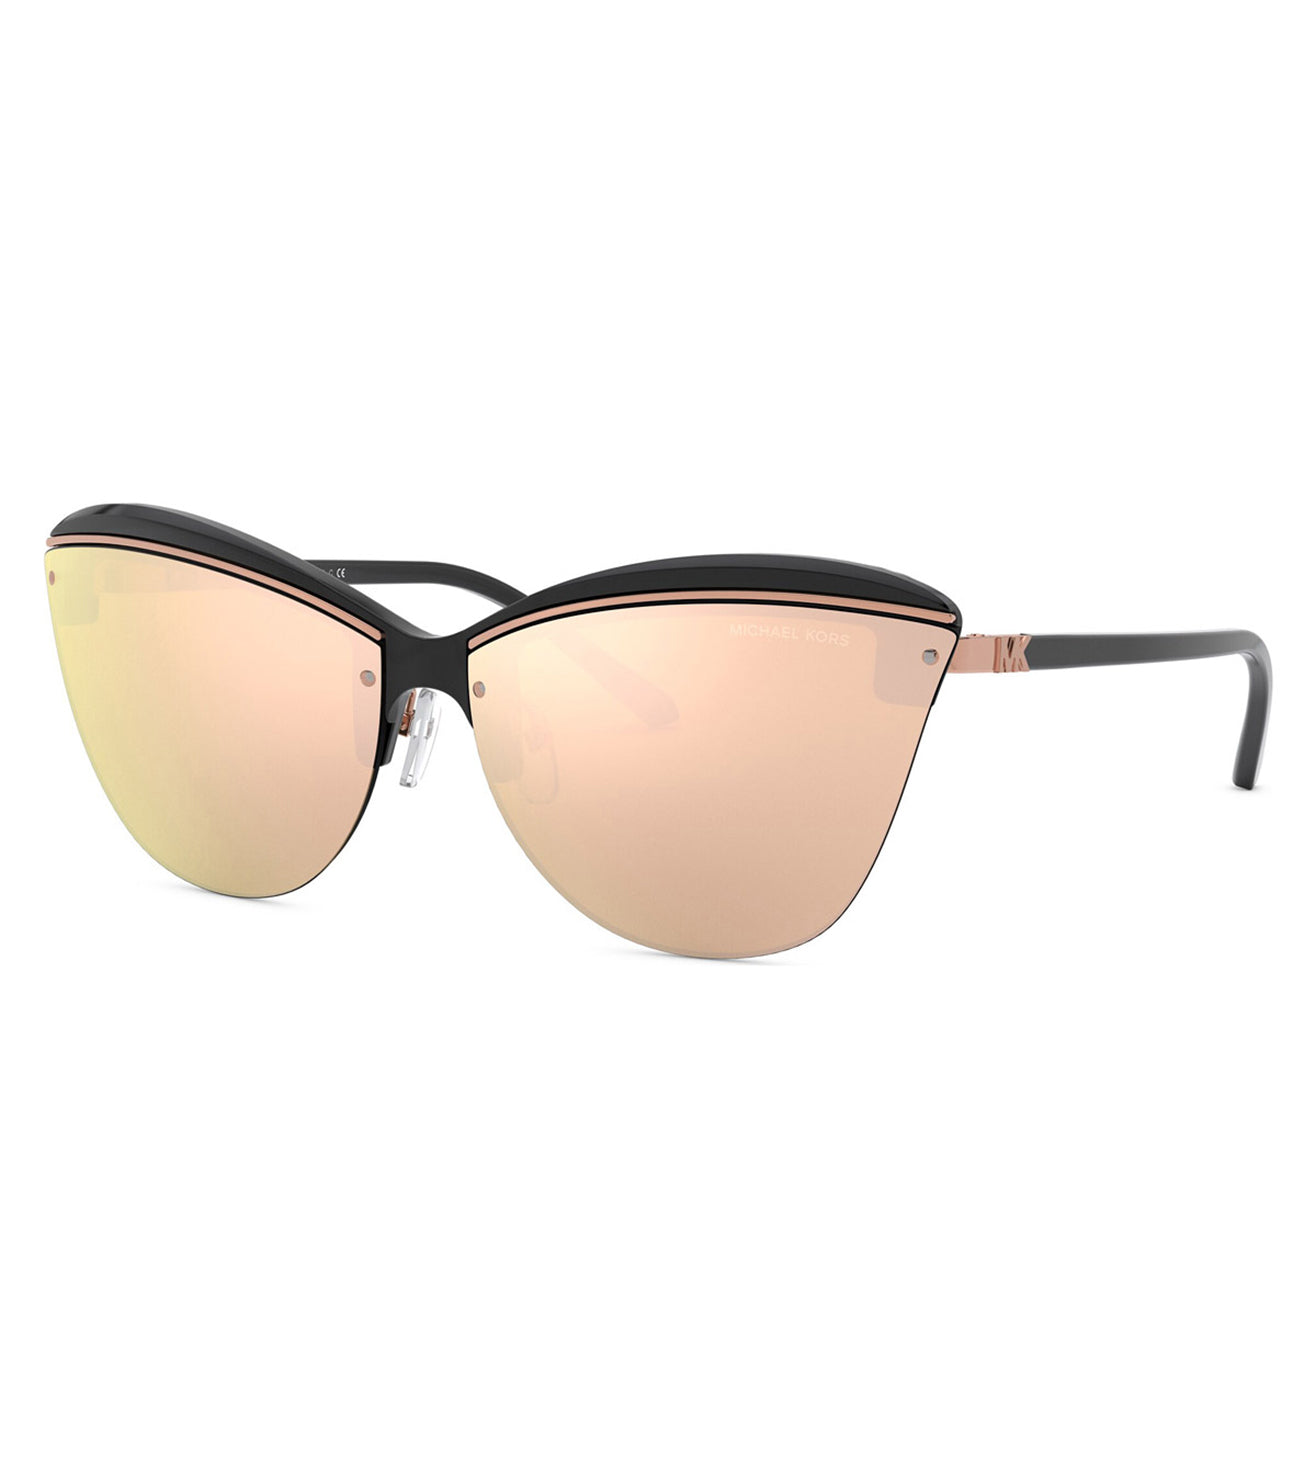 Michael Kors Women's Rose Gold Cat-eye Sunglasses